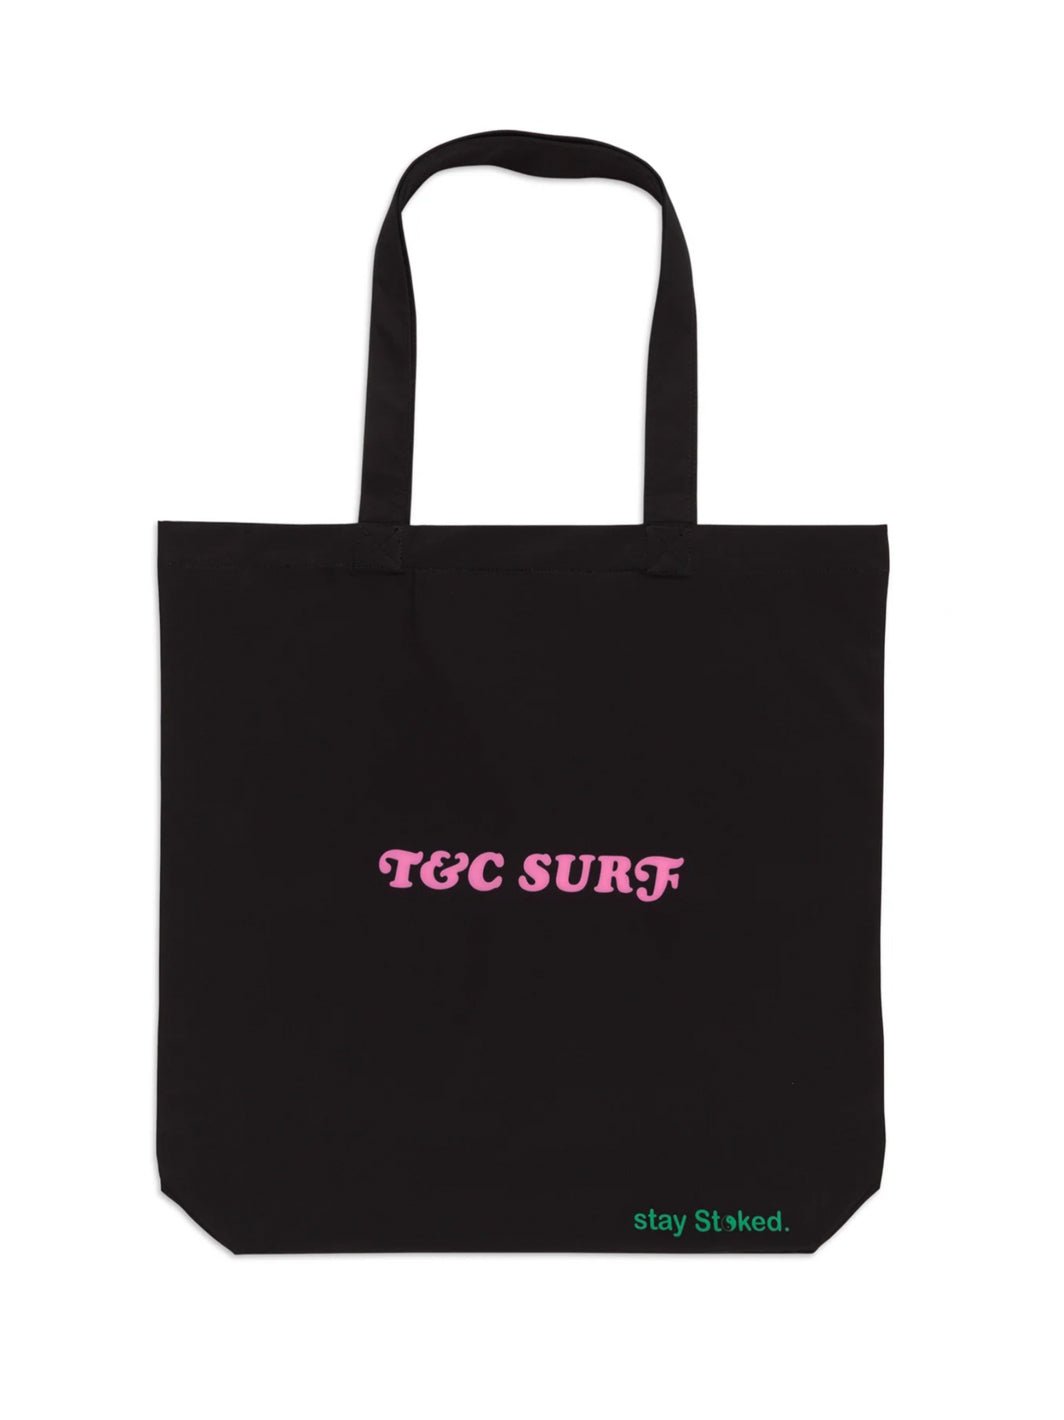 T&C Surf Designs T&C Surf Europe OG Logo Tote Bag, 